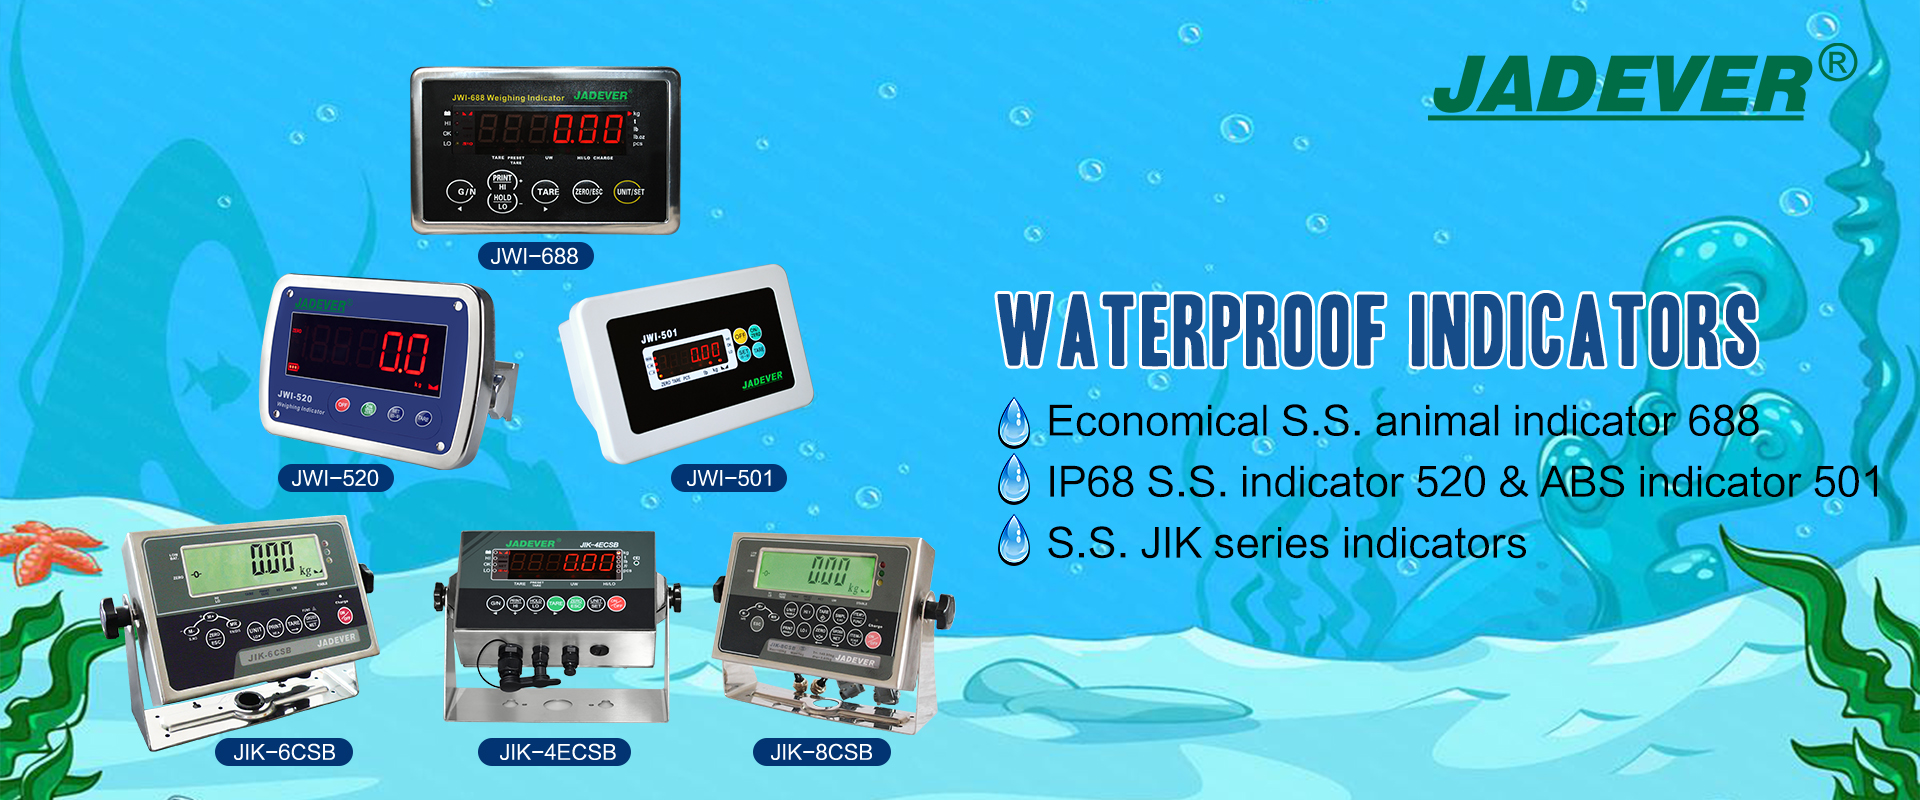 Jadever's Waterproof Weighing Indicators Series